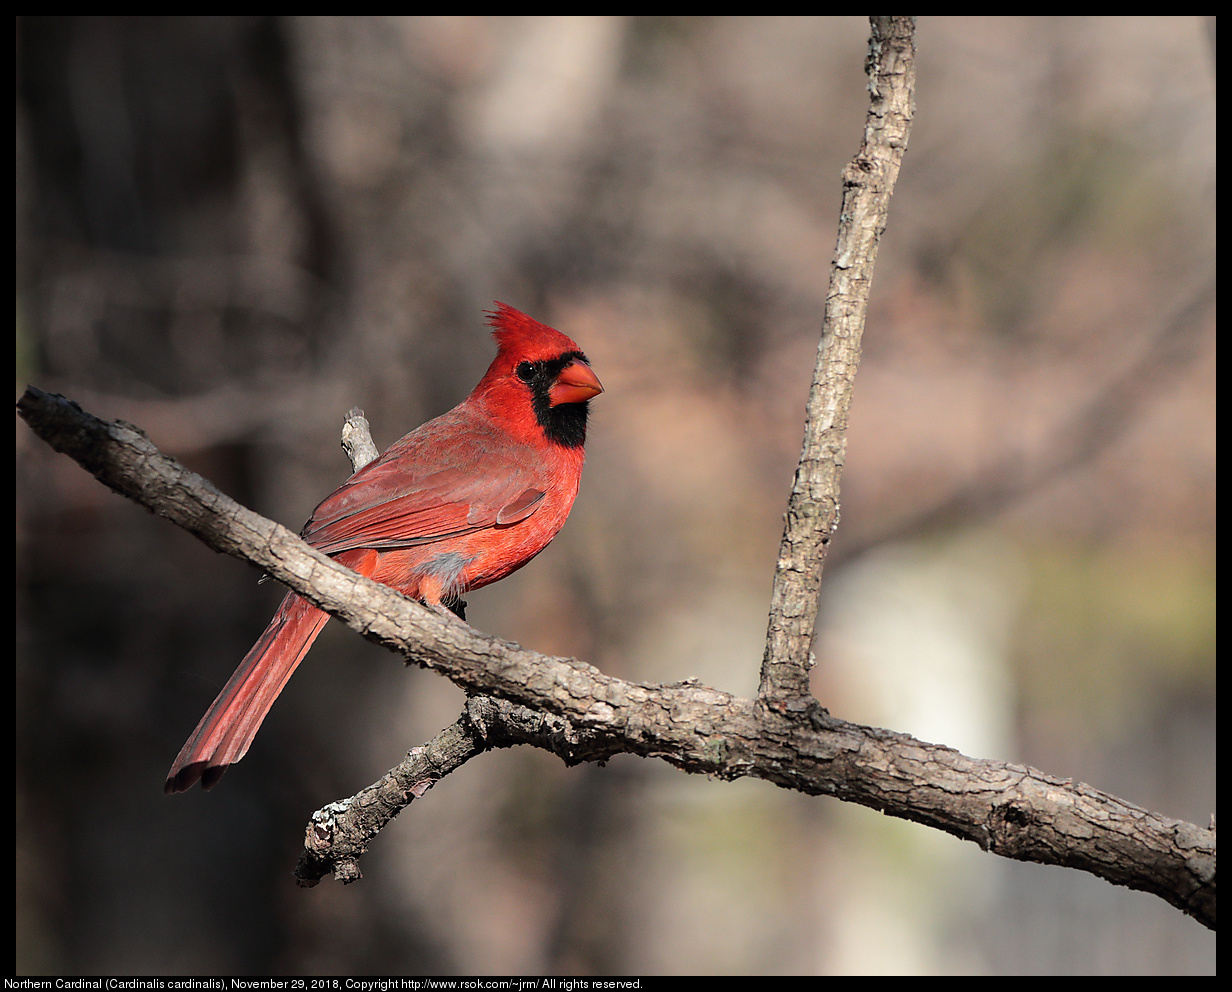 Northern Cardinal (Cardinalis cardinalis), November 29, 2018